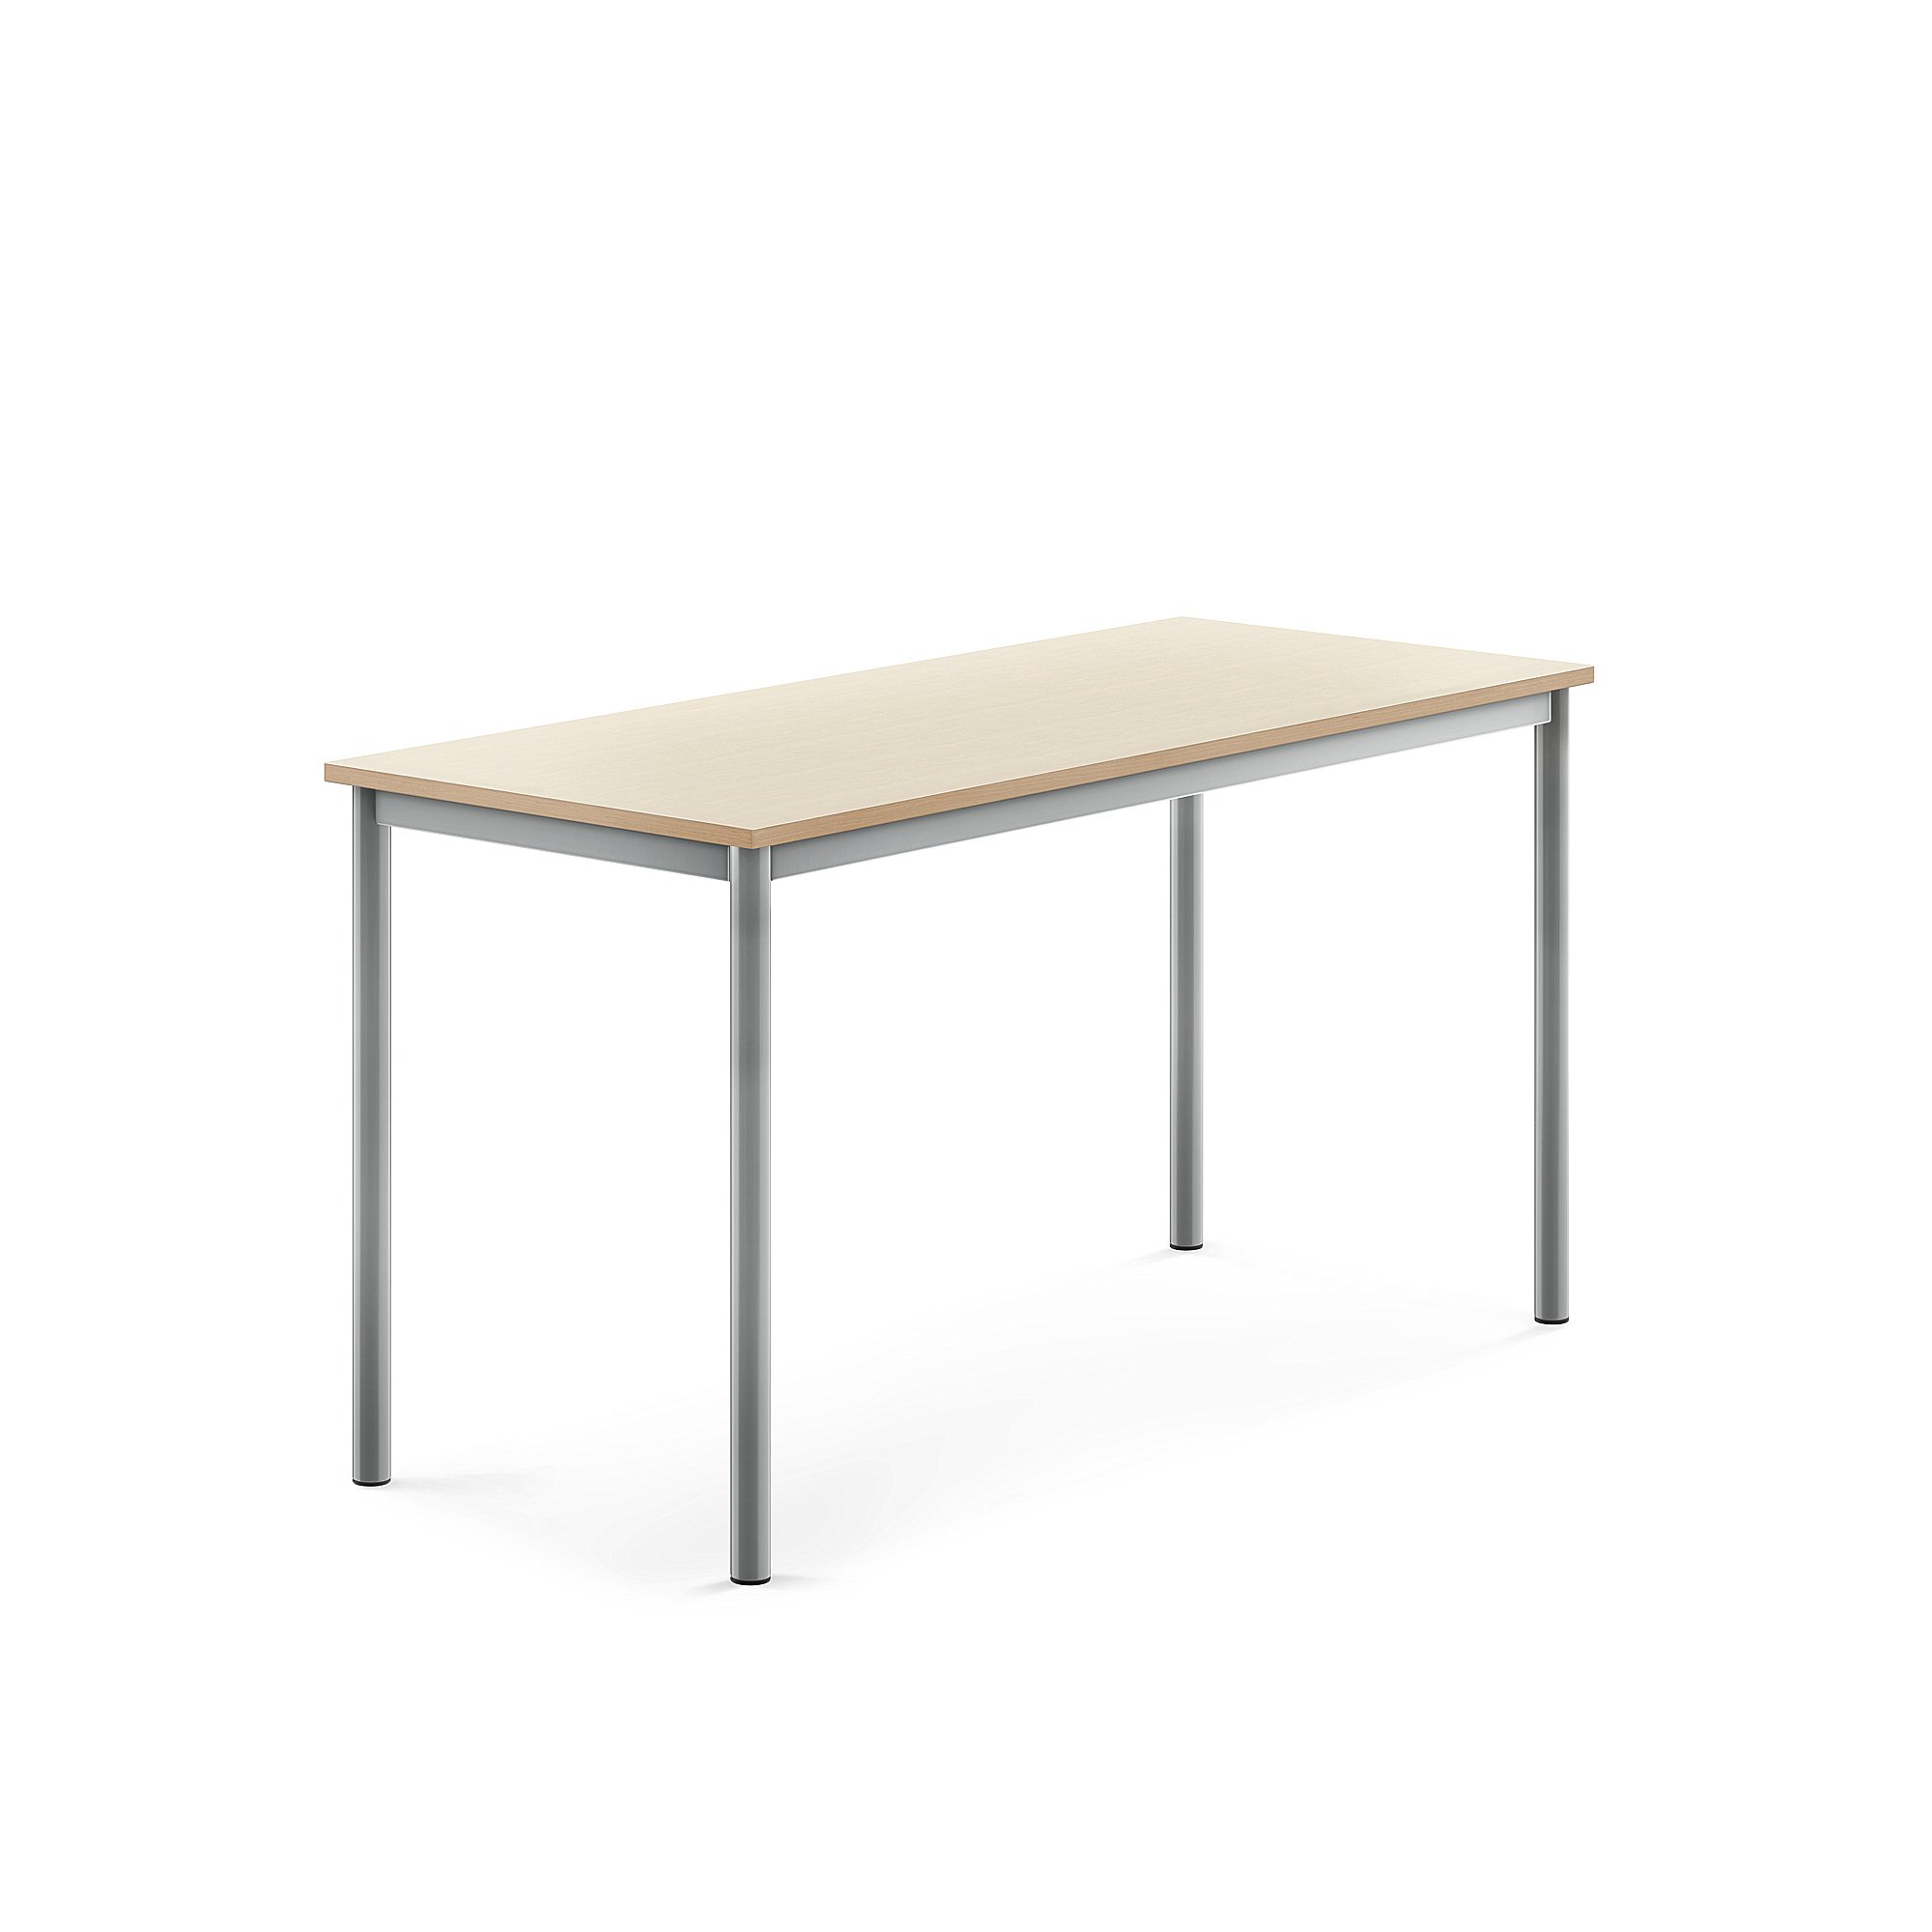 Stůl SONITUS, 1400x600x720 mm, stříbrné nohy, HPL deska tlumící hluk, bříza